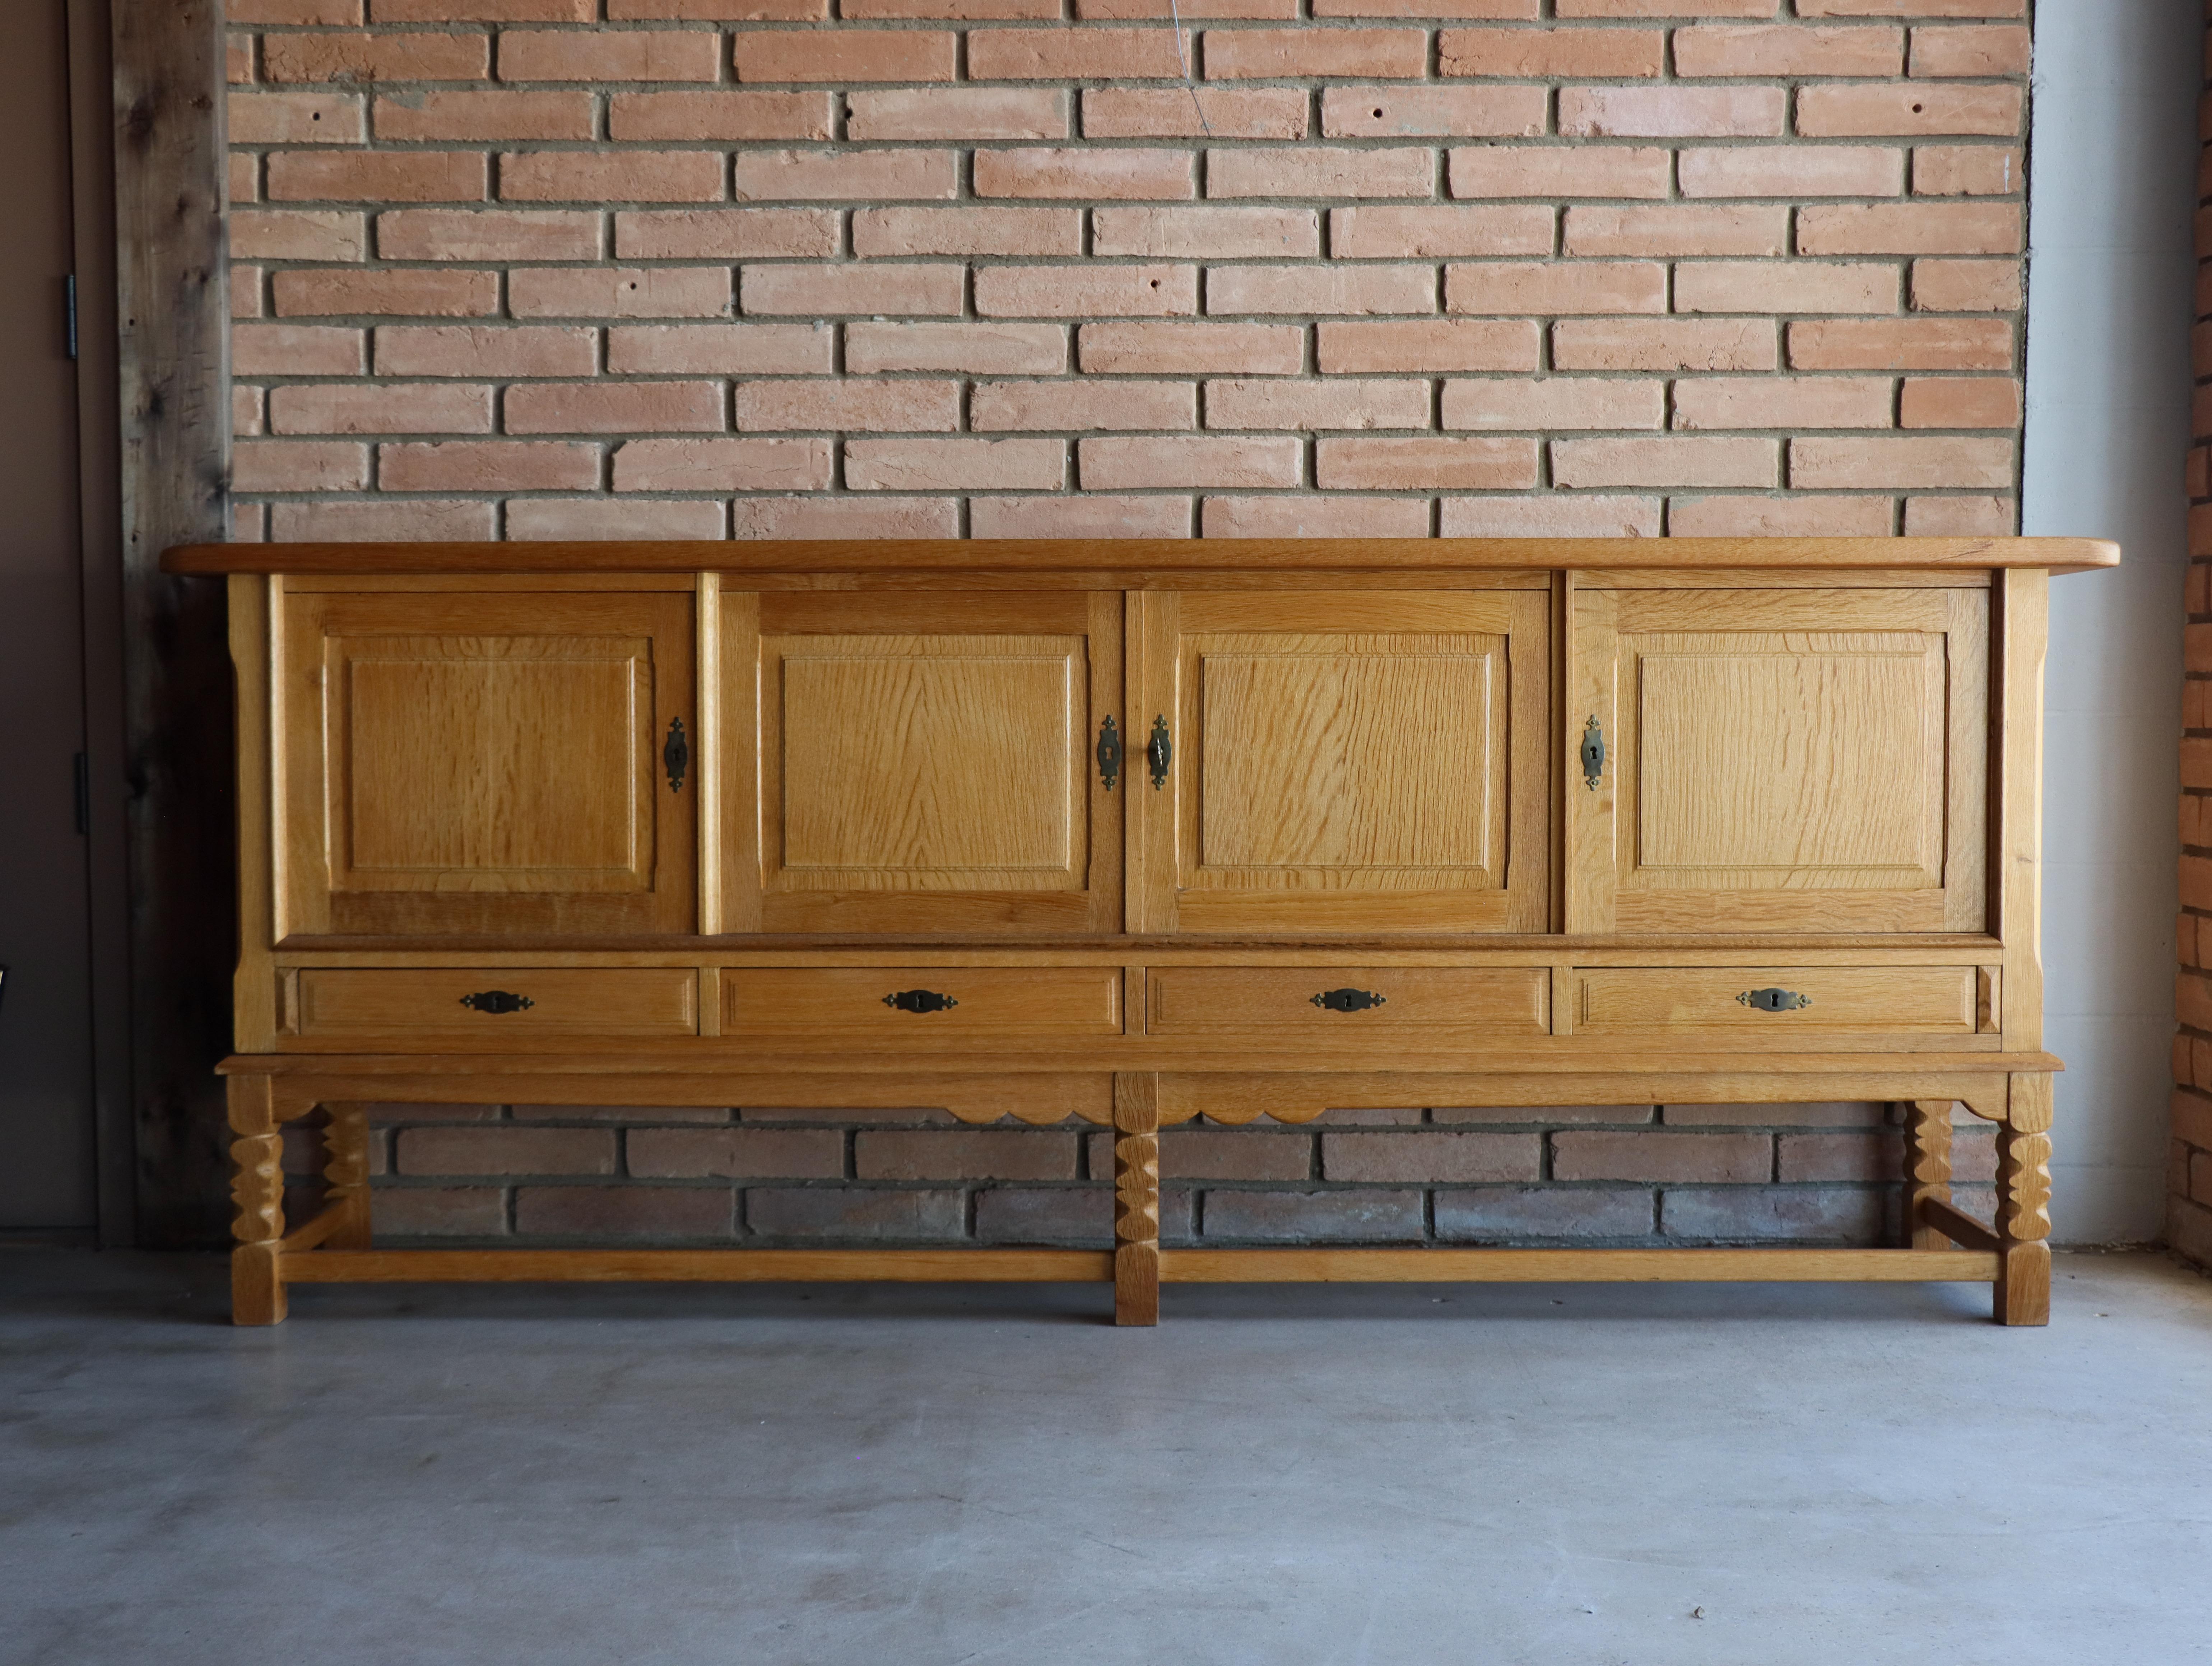  Schönes Sideboard/Credenza aus massiver Eiche, Henning Kjæernulf, Dänemark - 1960er Jahre.
Dieses schöne Exemplar ist ausschließlich aus massiver, viertelnahtgenähter Weißeiche gefertigt. Die Vorderseite des Schranks zeichnet sich durch eine hohe